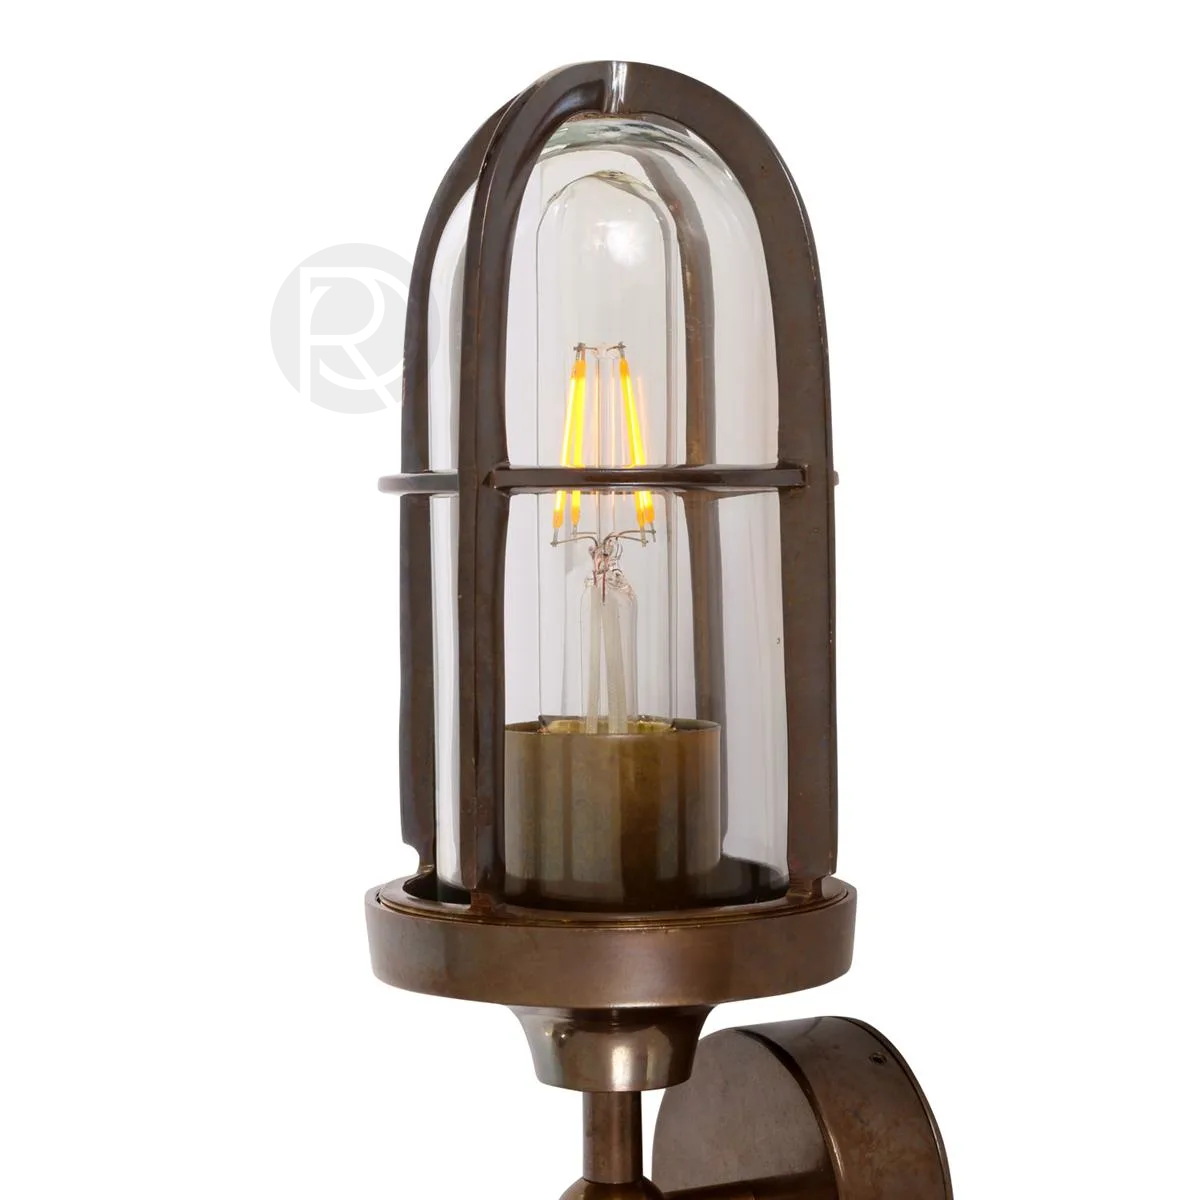 Дизайнерский настенный светильник (Бра) CLAYTON DOUBLE by Mullan Lighting